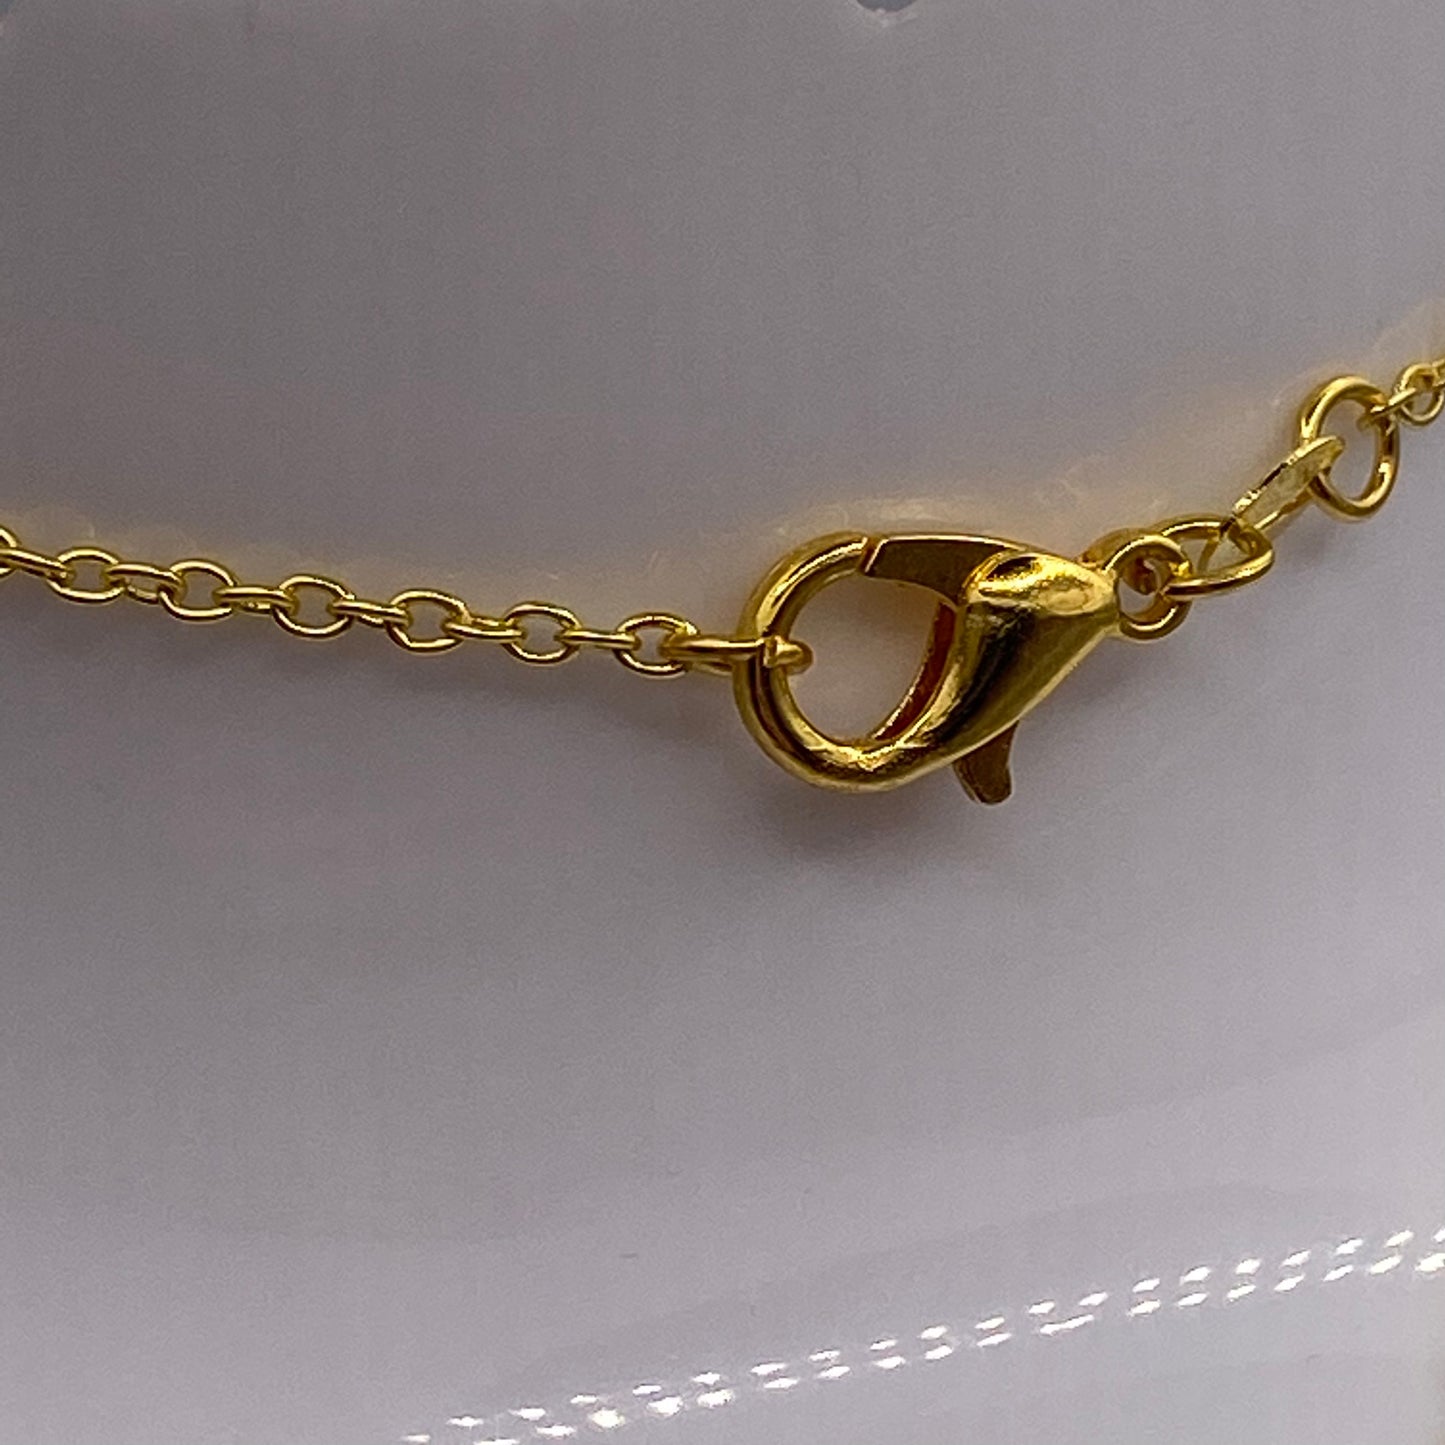 Gold Hedgehog Necklace